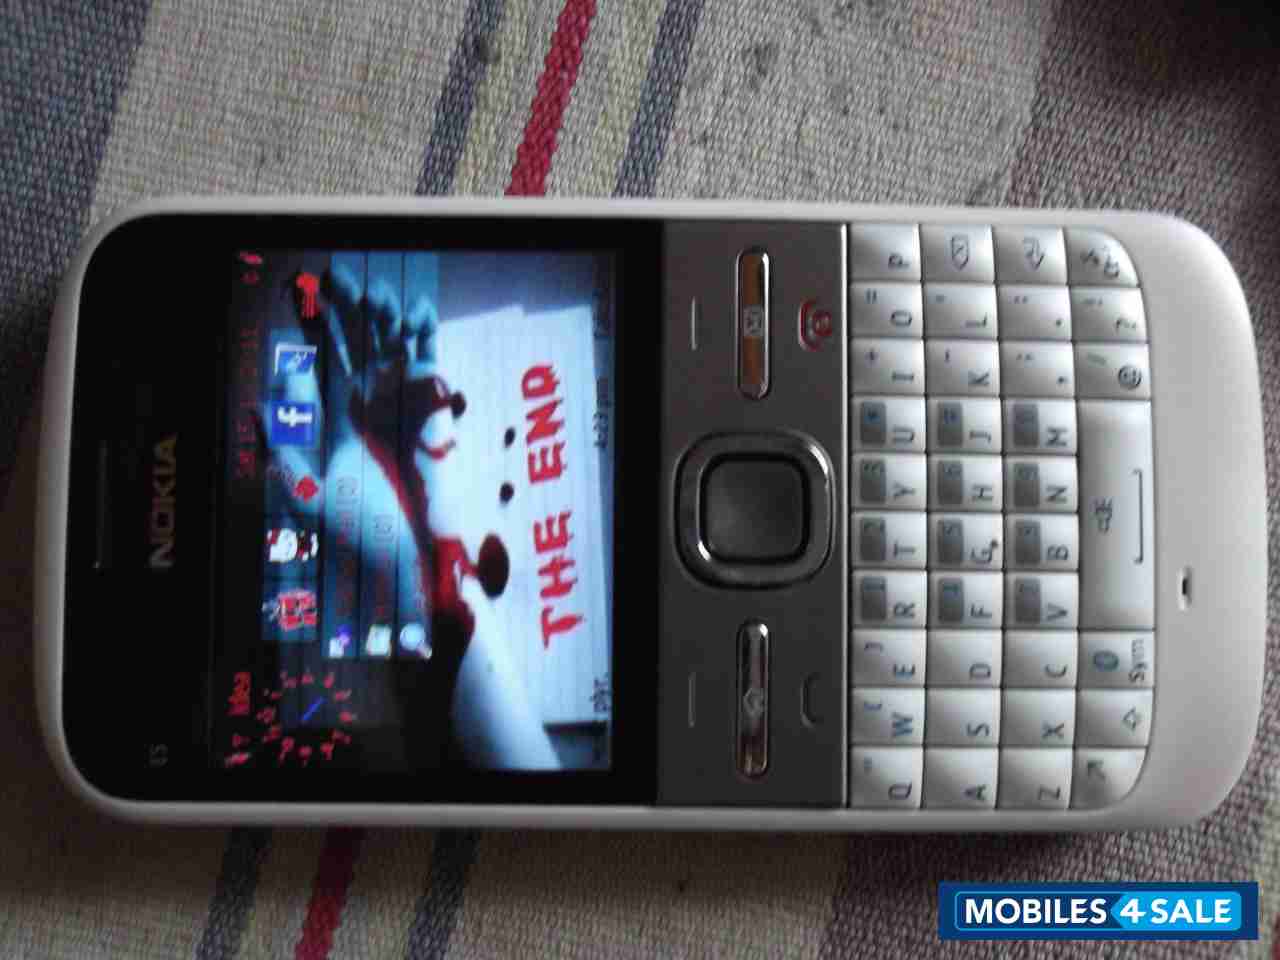 White Nokia E-series E5